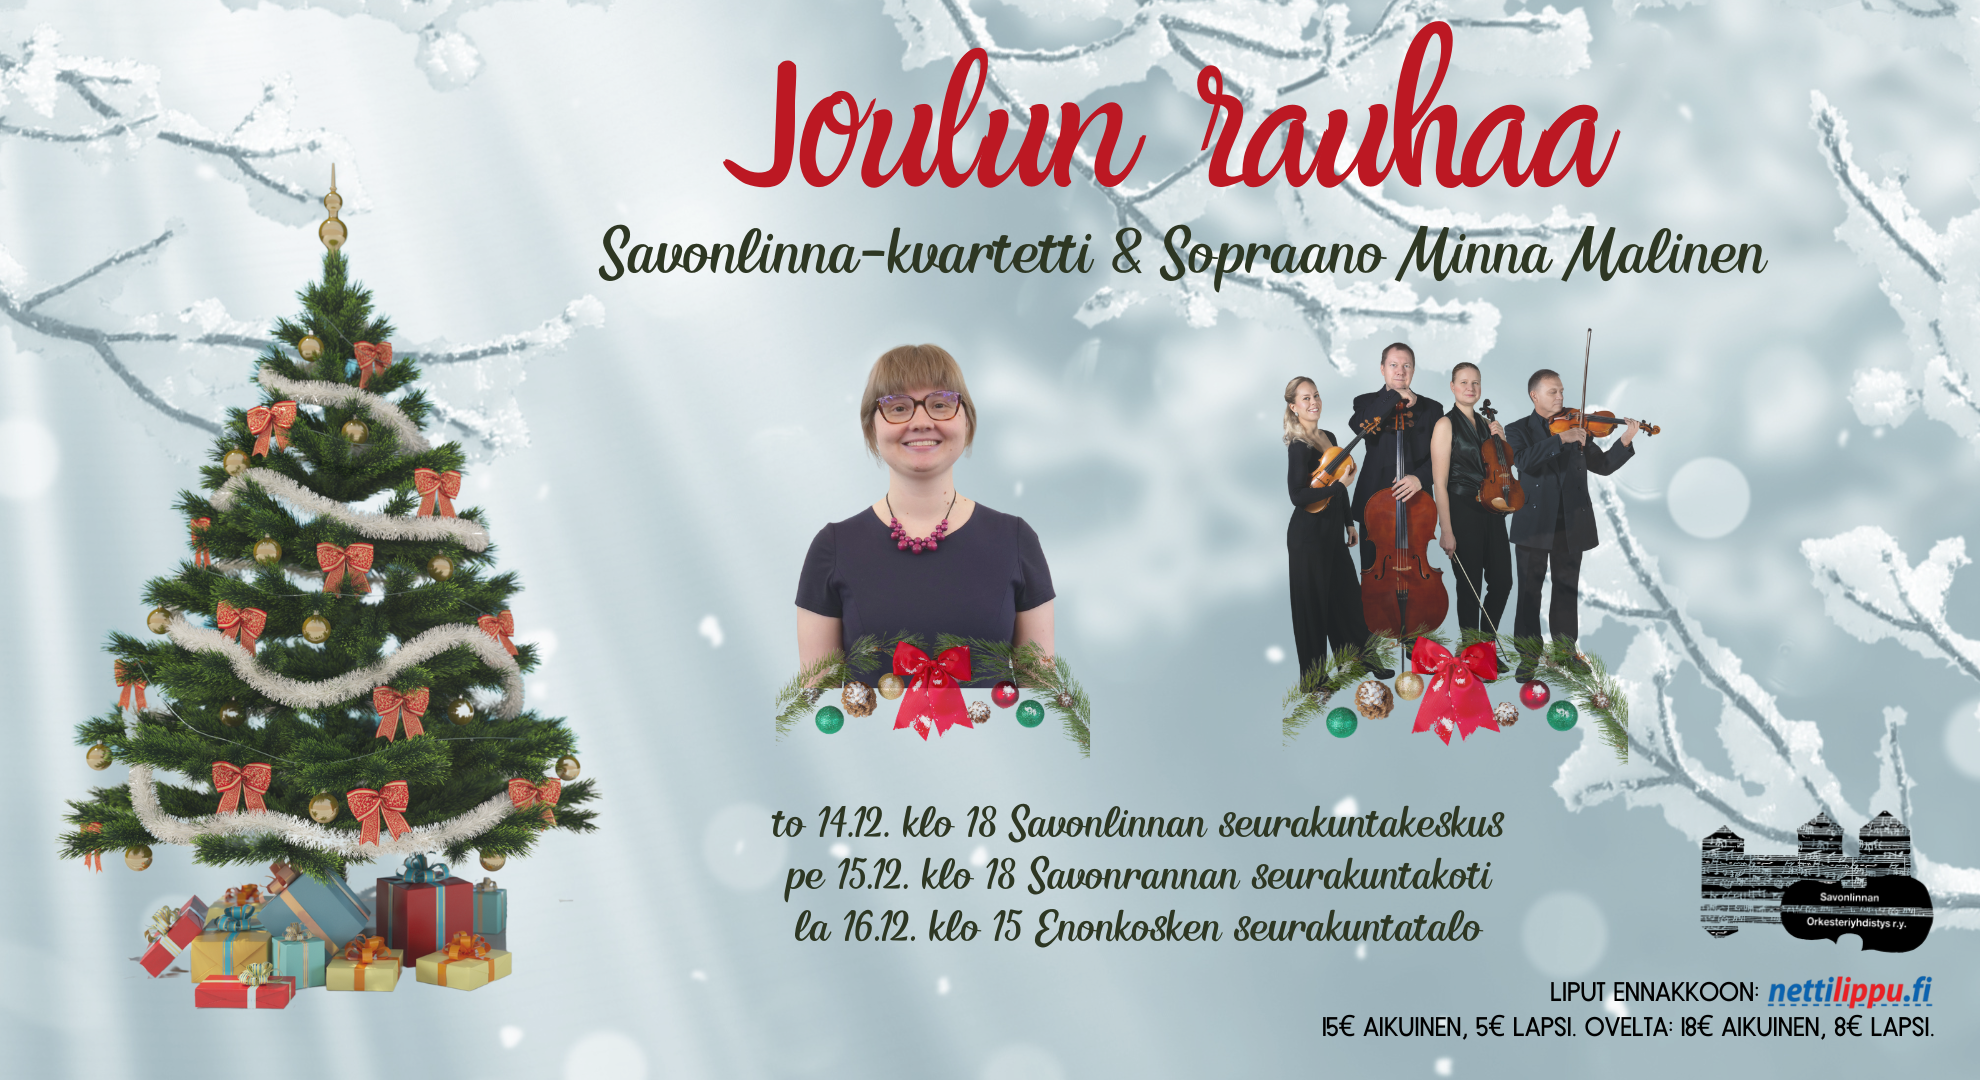 Kuvassa koristeltu joulukuusi. Sopraano Minna Malinen ja Savonlinna-kvartetti.